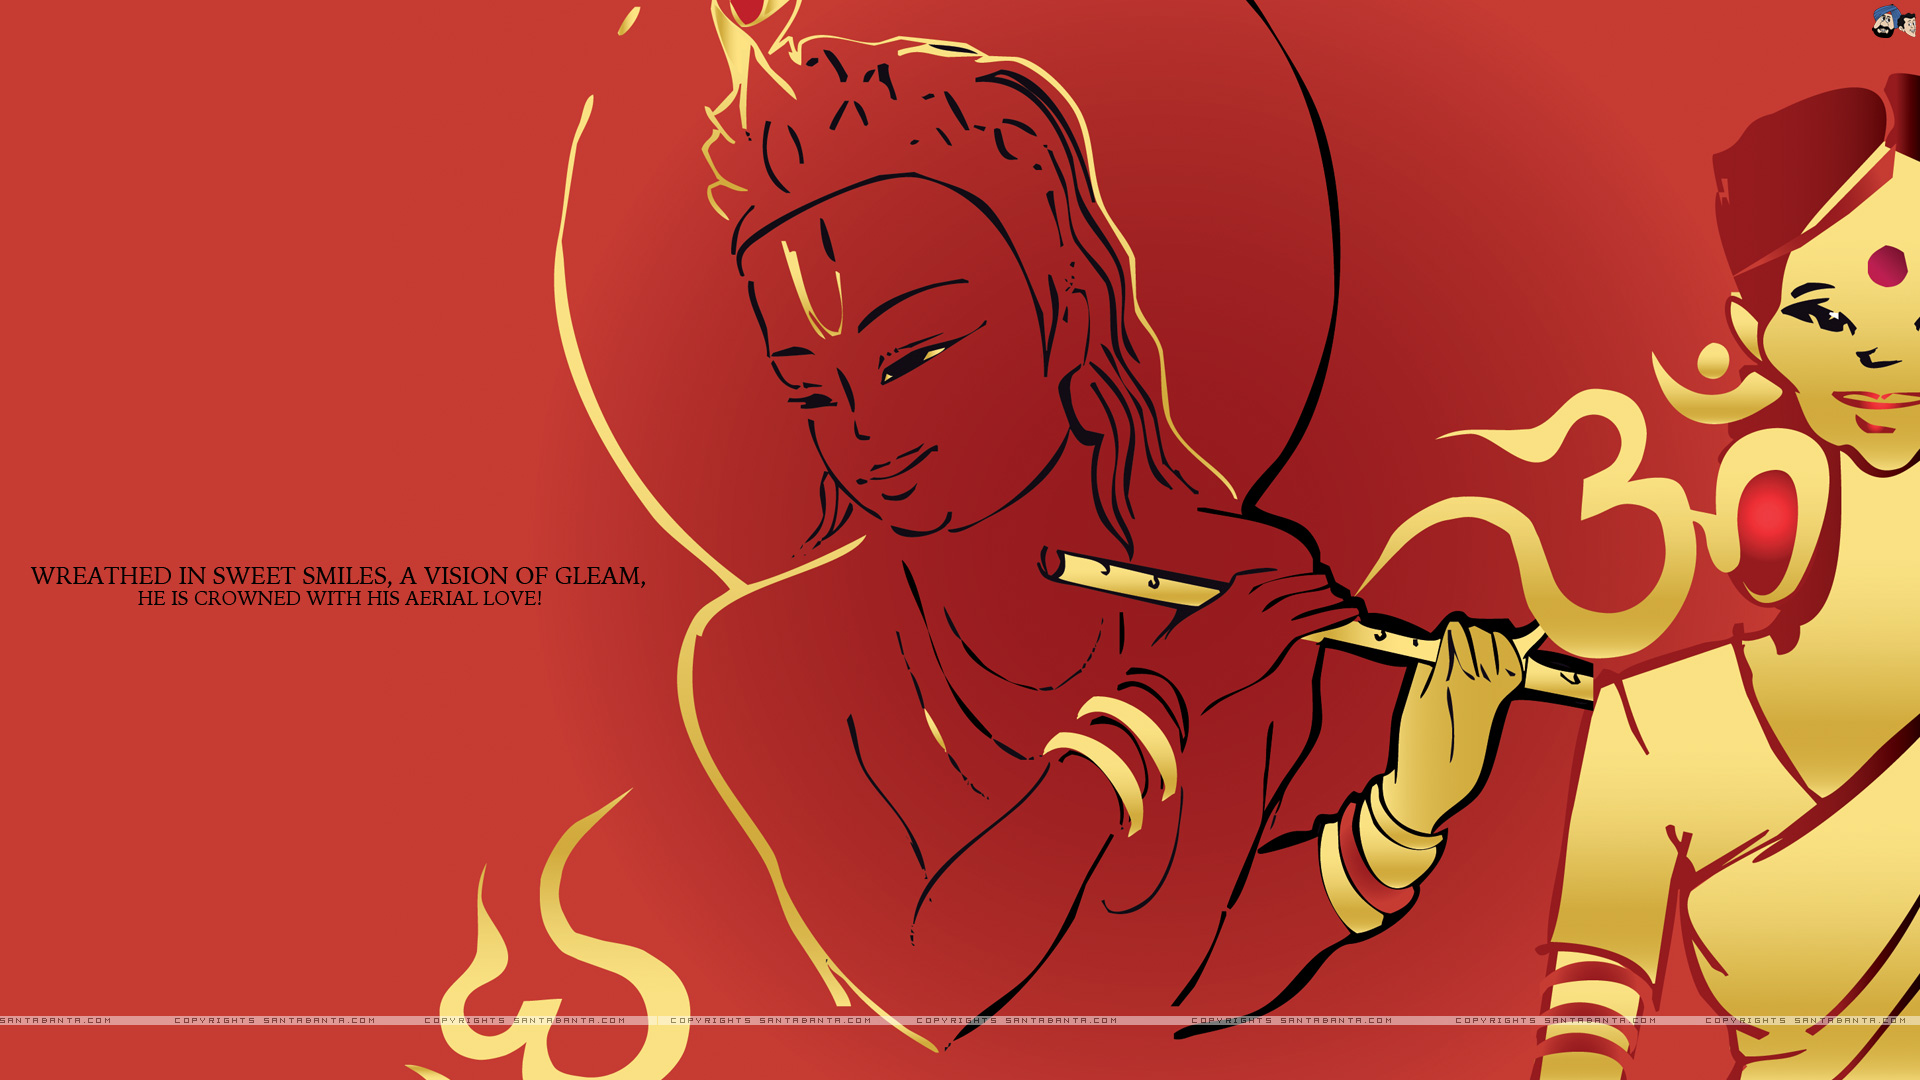 Lord Krishna HD Wallpaper Free Download